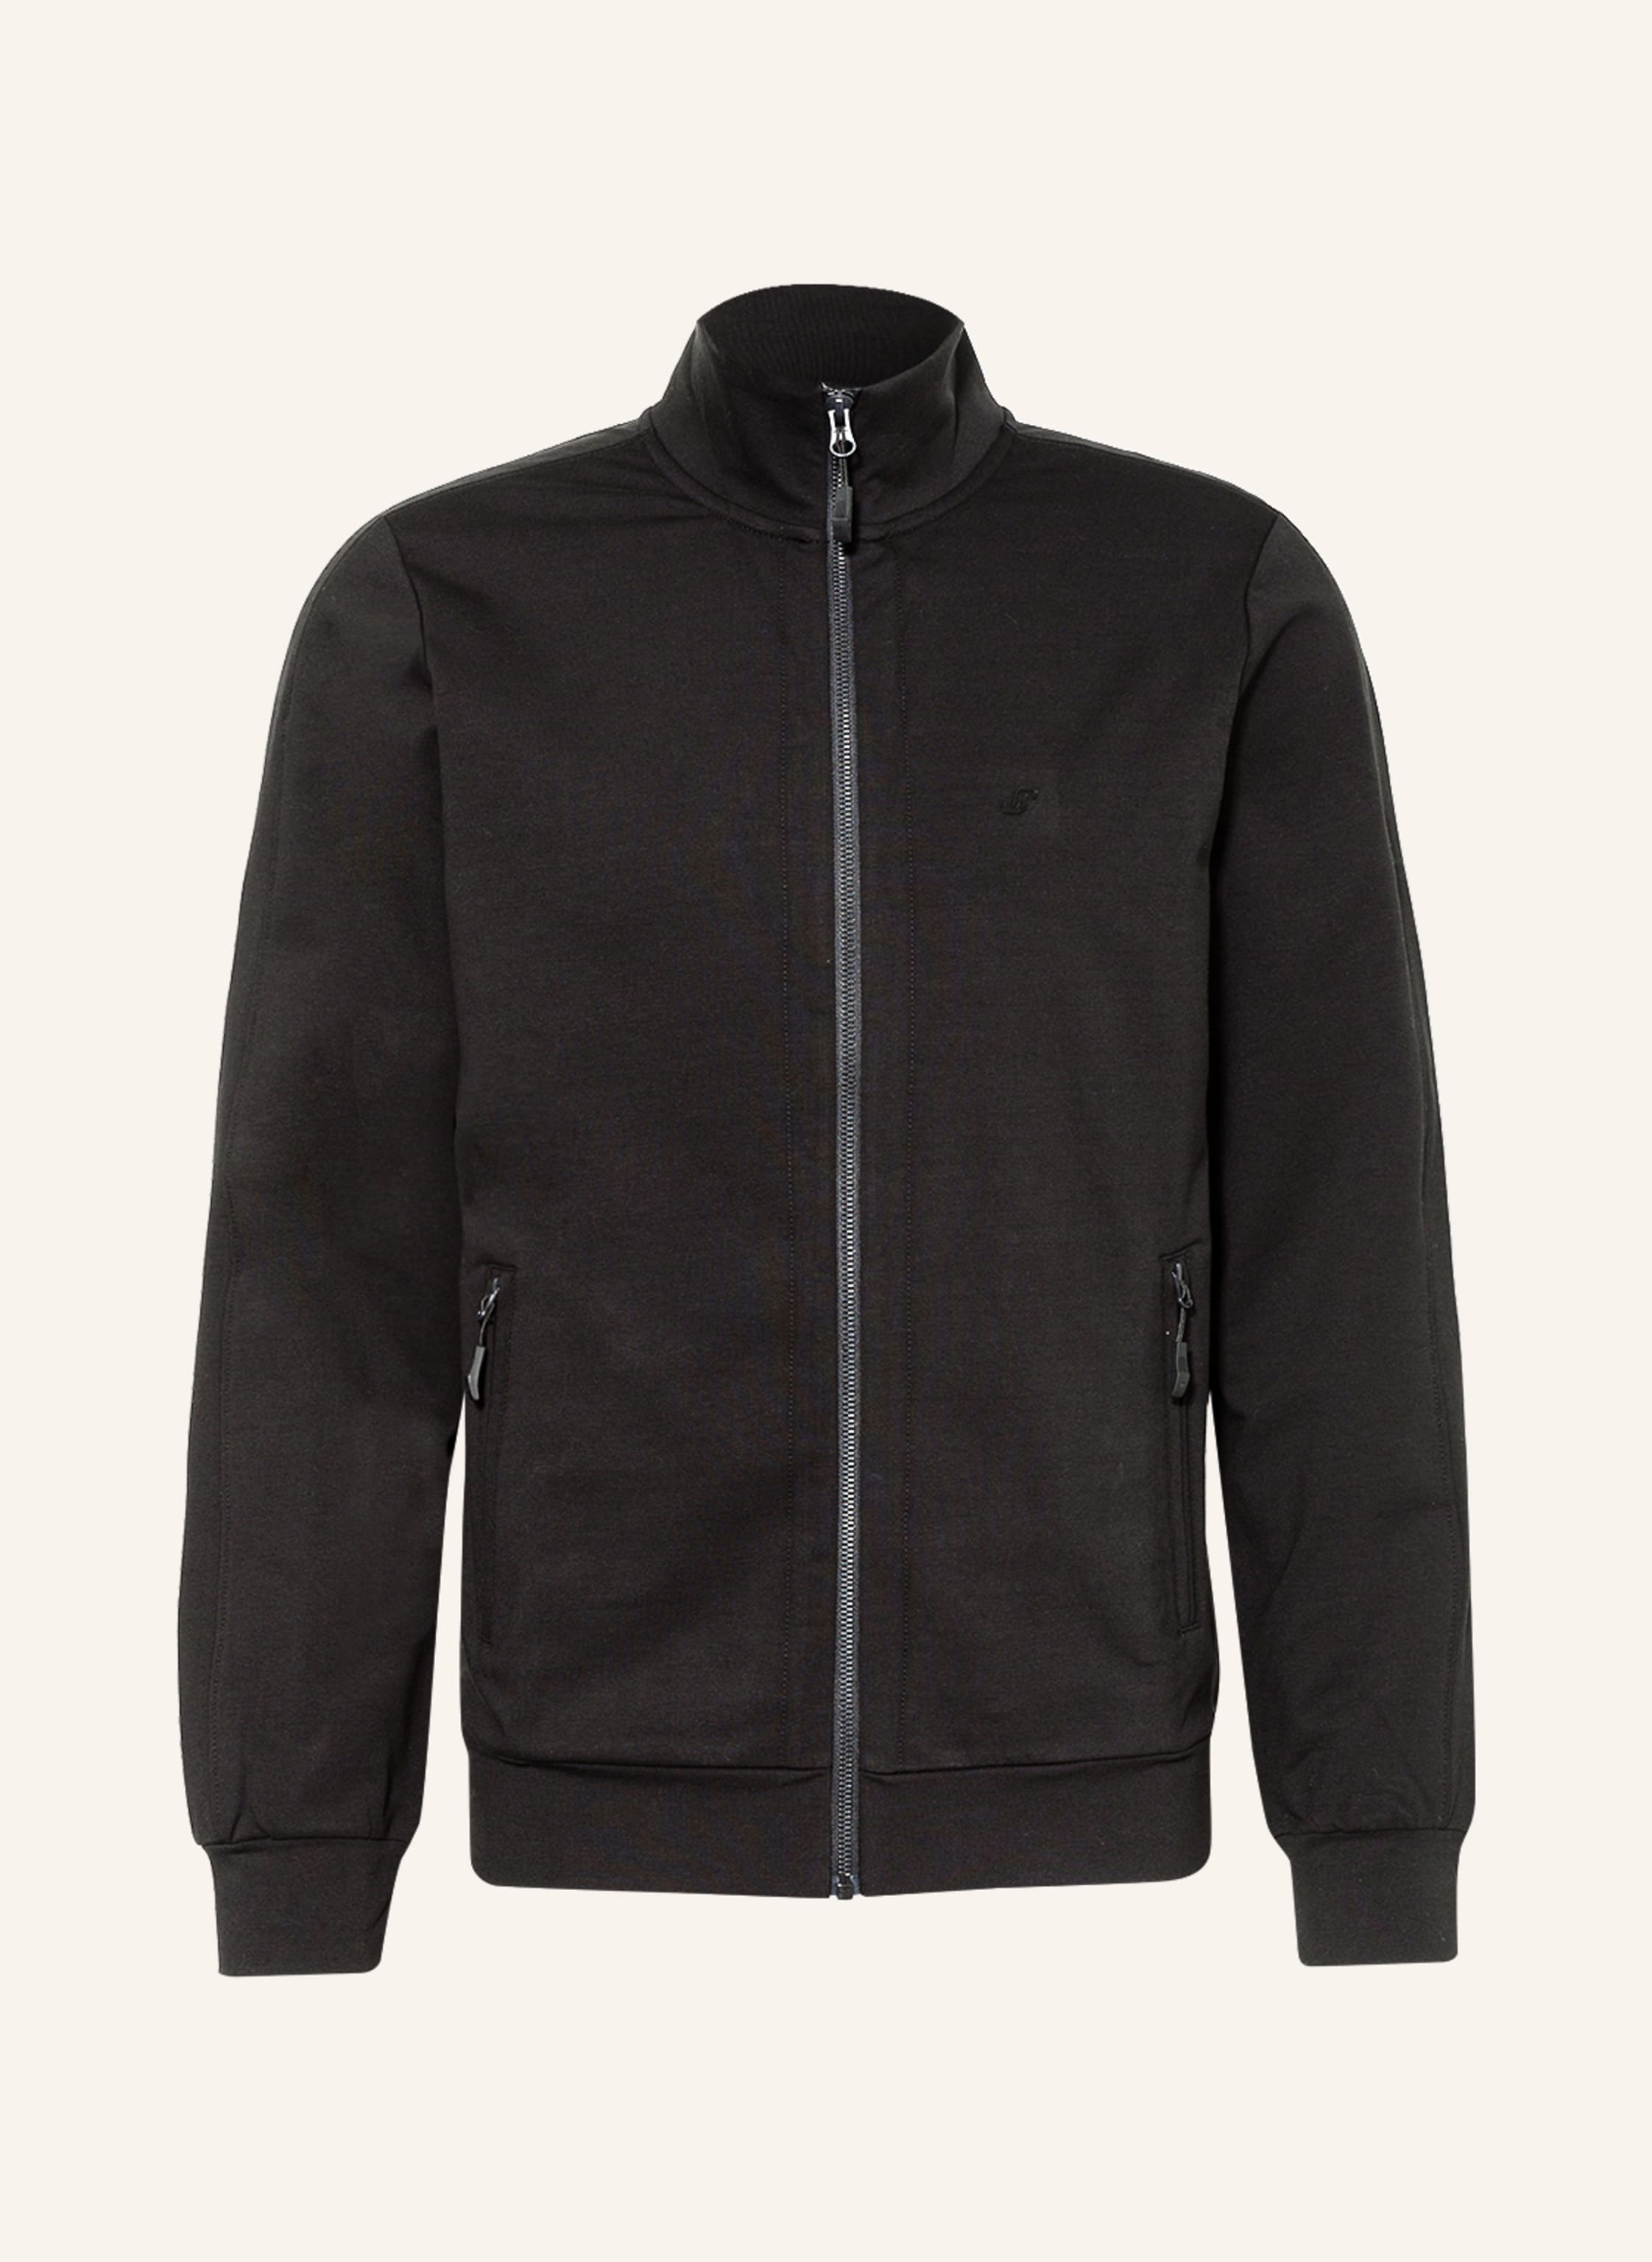 JOY sportswear Sweatshirt HENRI in black - Buy Online! | Breuninger